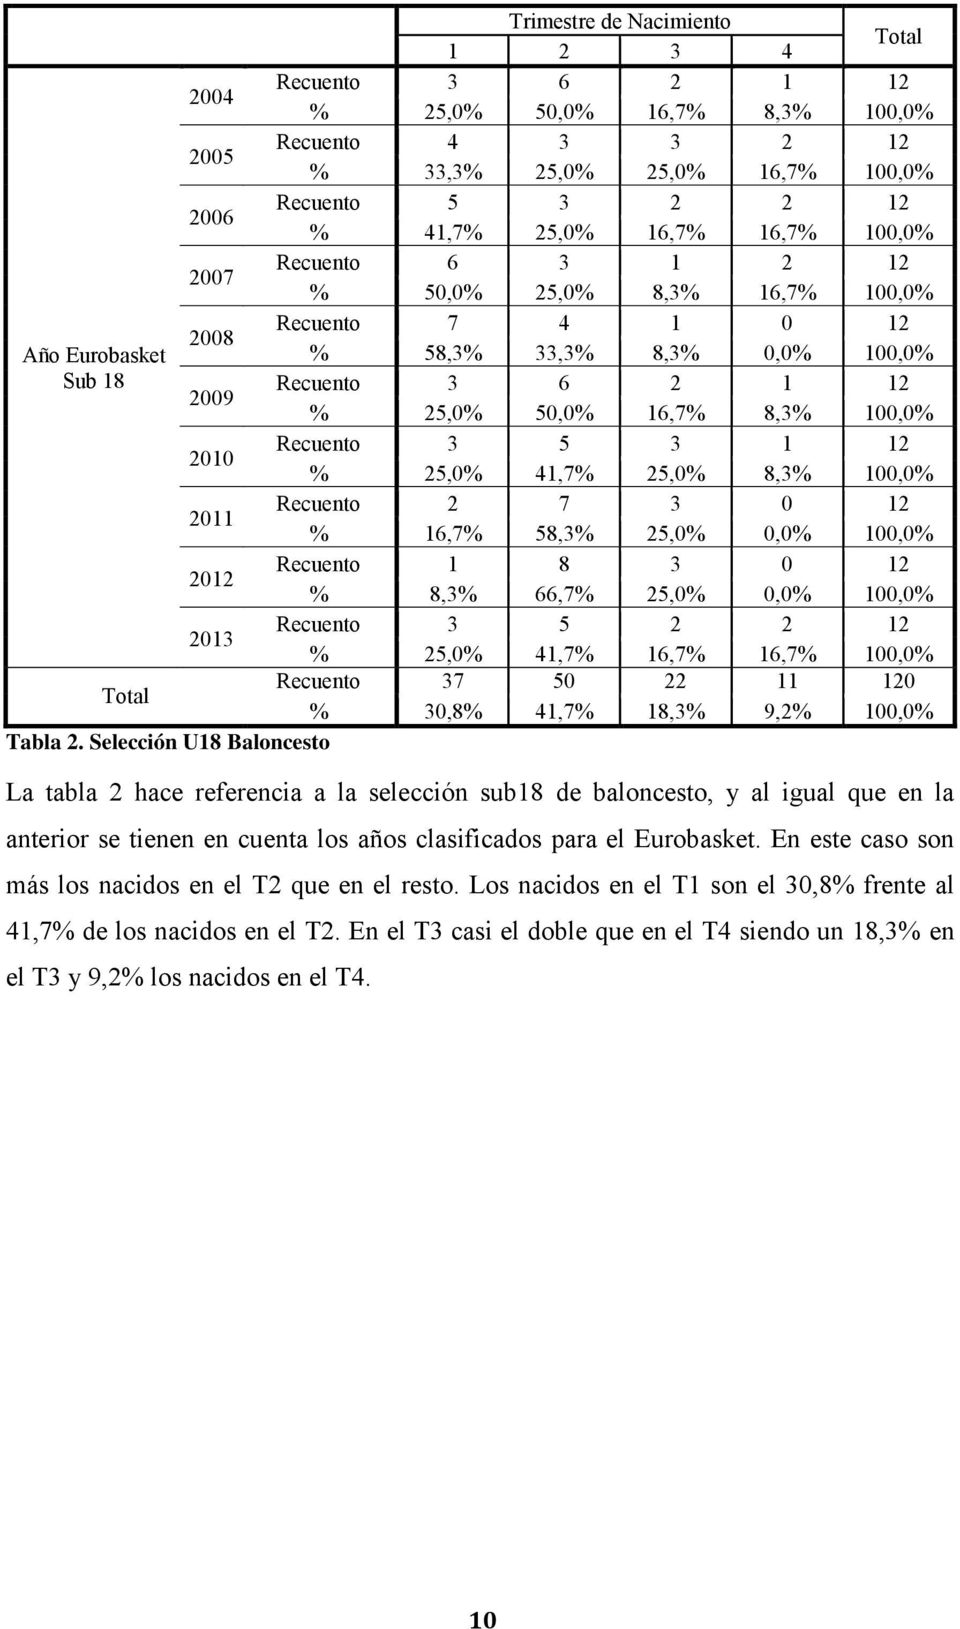 2010 Recuento 3 5 3 1 12 % 25,0% 41,7% 25,0% 8,3% 100,0% 2011 Recuento 2 7 3 0 12 % 16,7% 58,3% 25,0% 0,0% 100,0% 2012 Recuento 1 8 3 0 12 % 8,3% 66,7% 25,0% 0,0% 100,0% 2013 Recuento 3 5 2 2 12 %